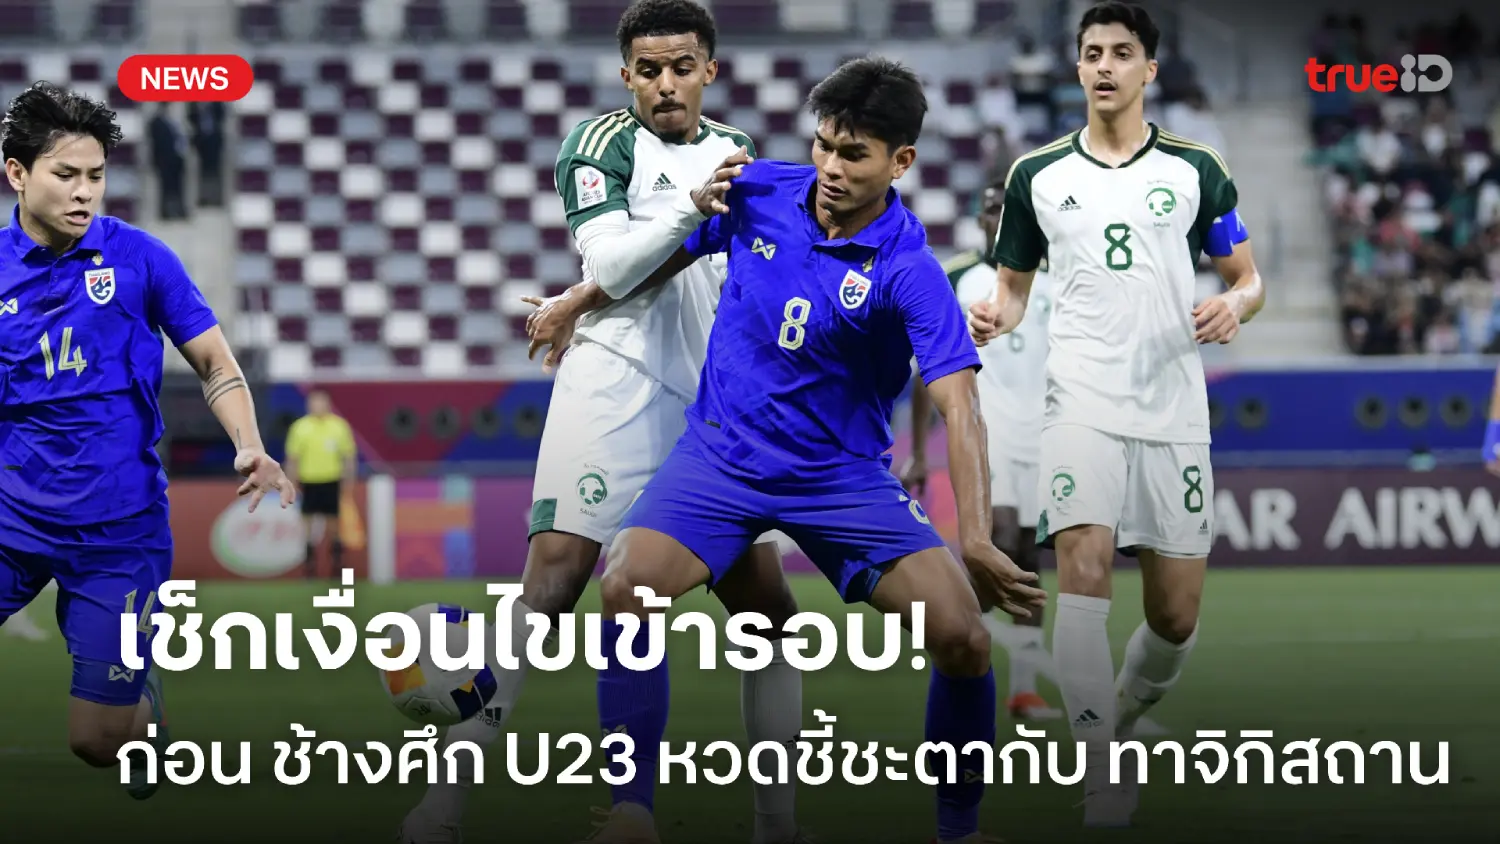 ก่อนเกมชี้ชะตา!! เช็กเงื่อนไขเข้ารอบ ทีมชาติไทย U23 ศึกชิงแชมป์เอเชีย